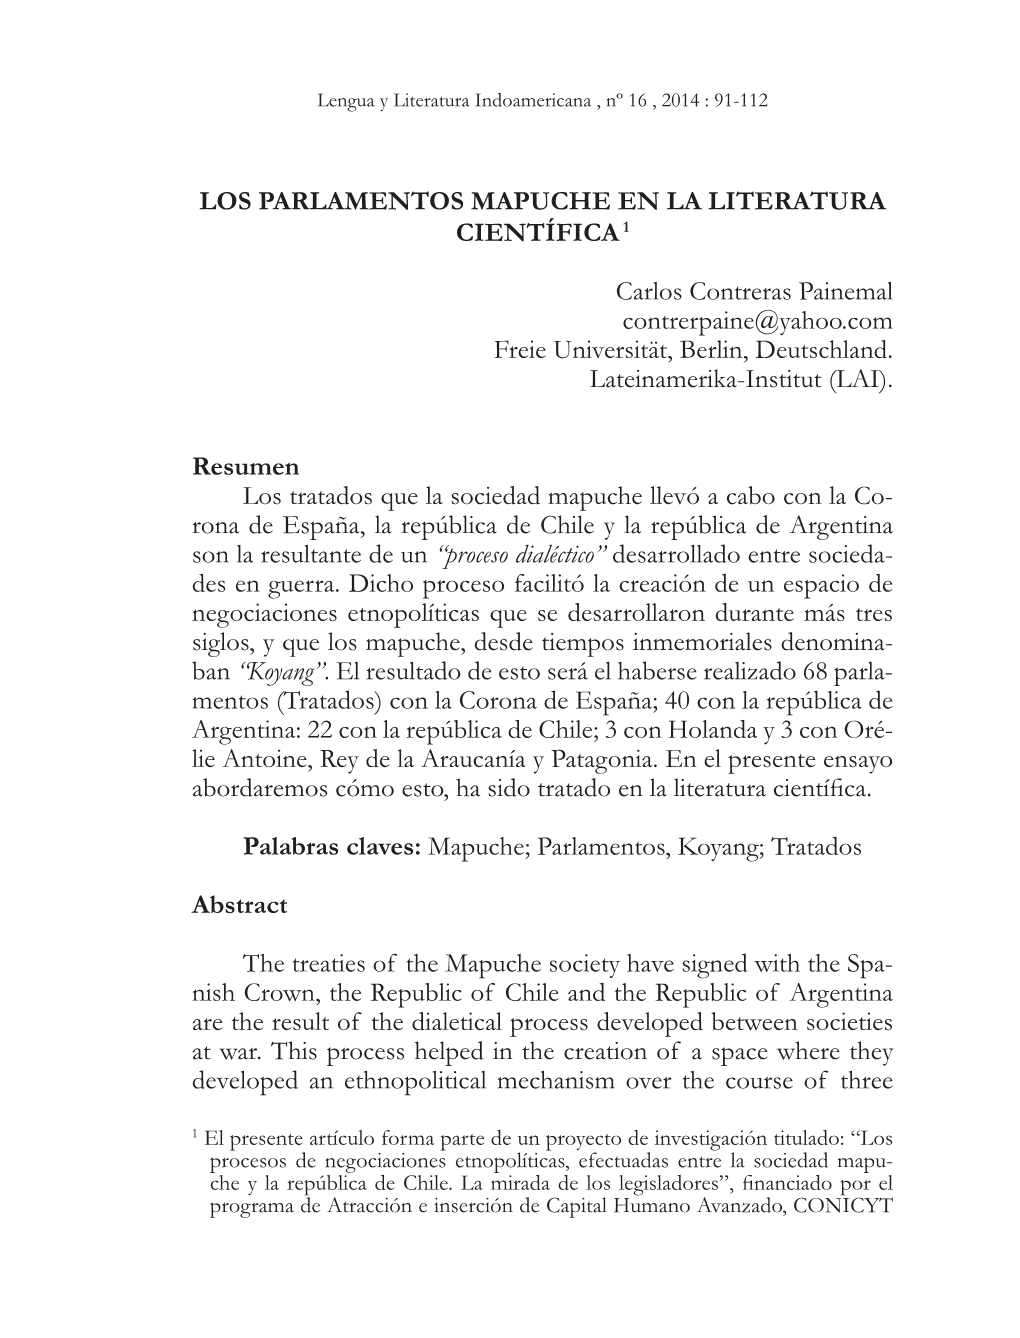 Los Parlamentos Mapuche En La Literatura Científica1